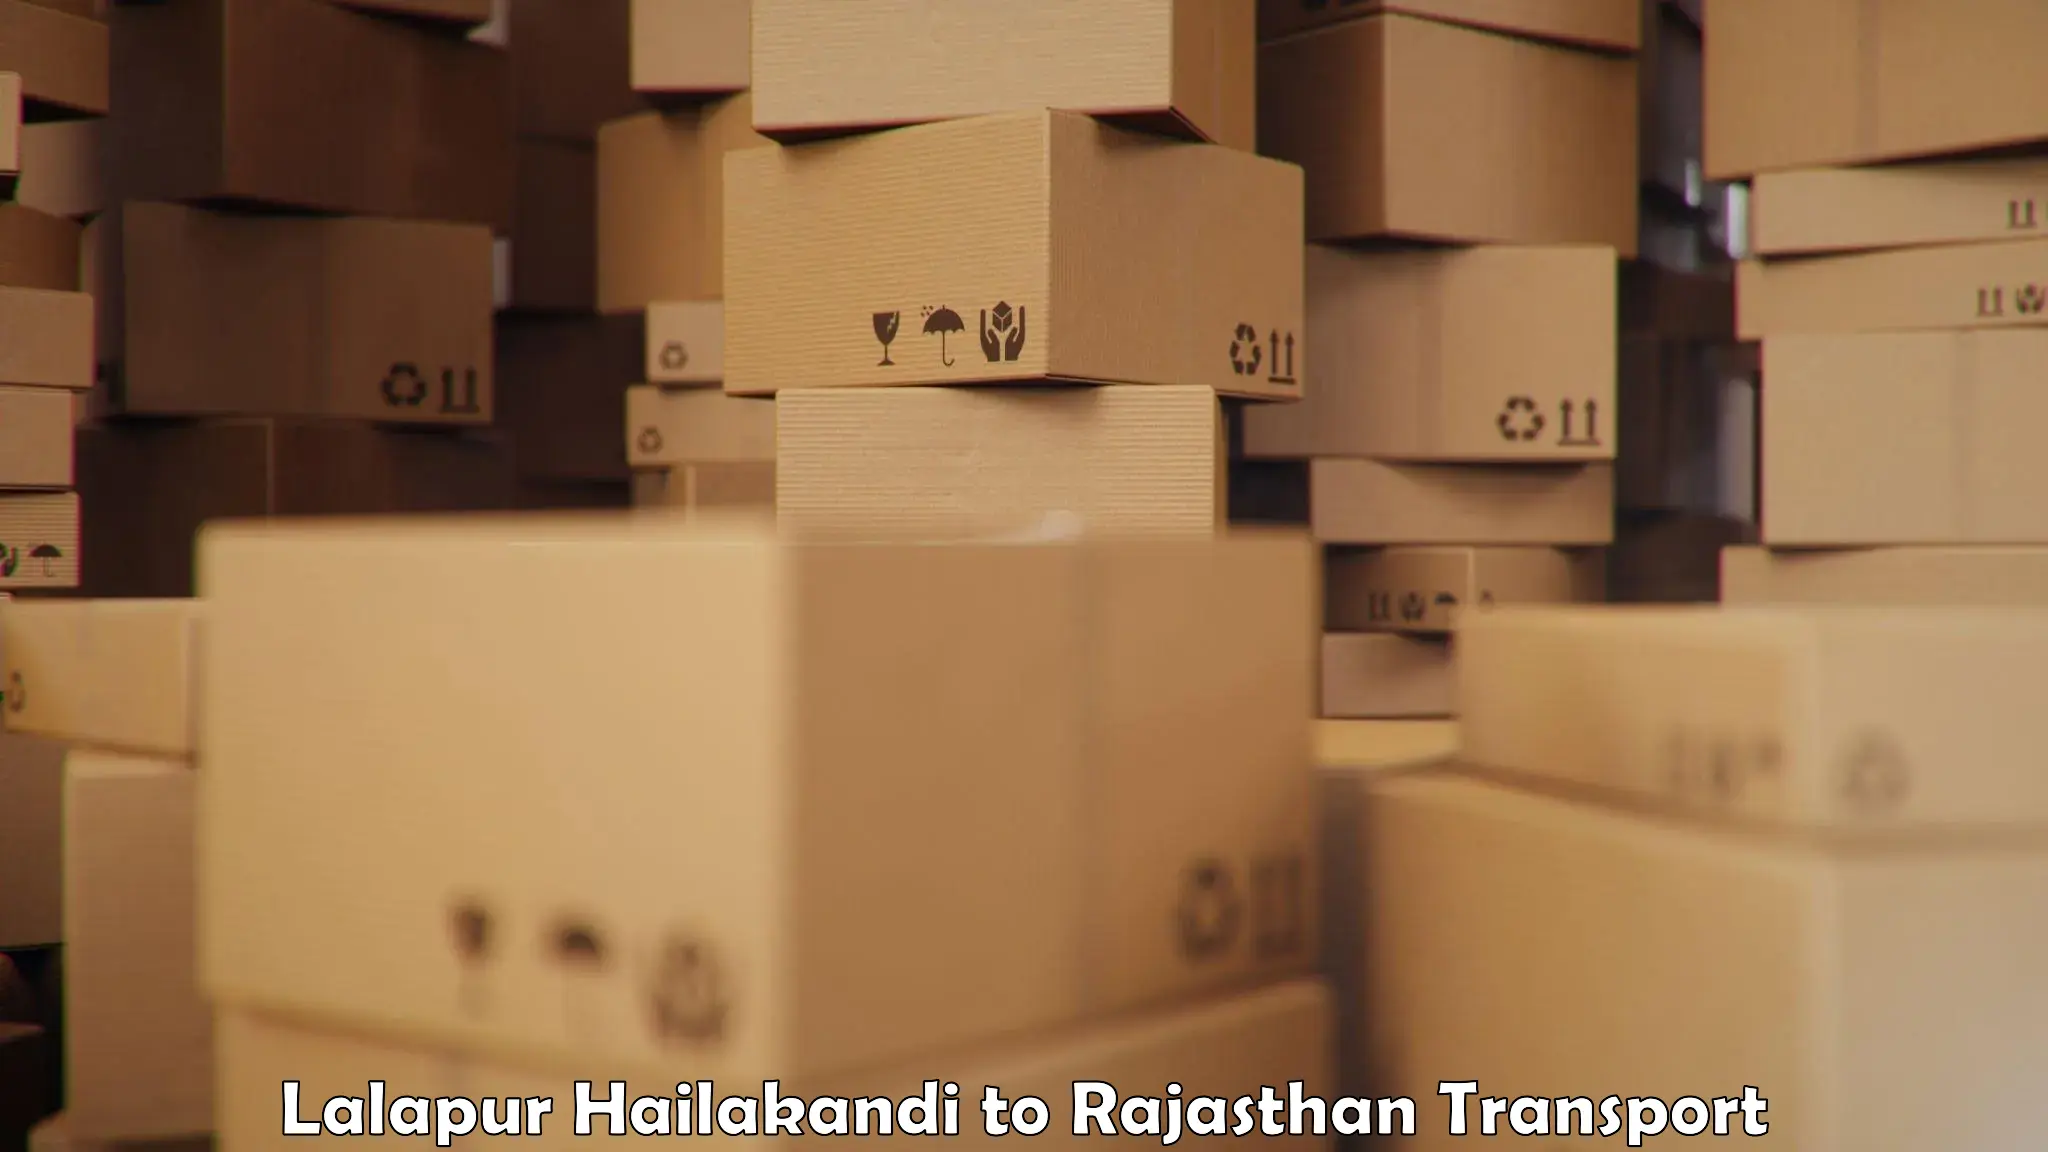 Cargo transport services Lalapur Hailakandi to Phulera